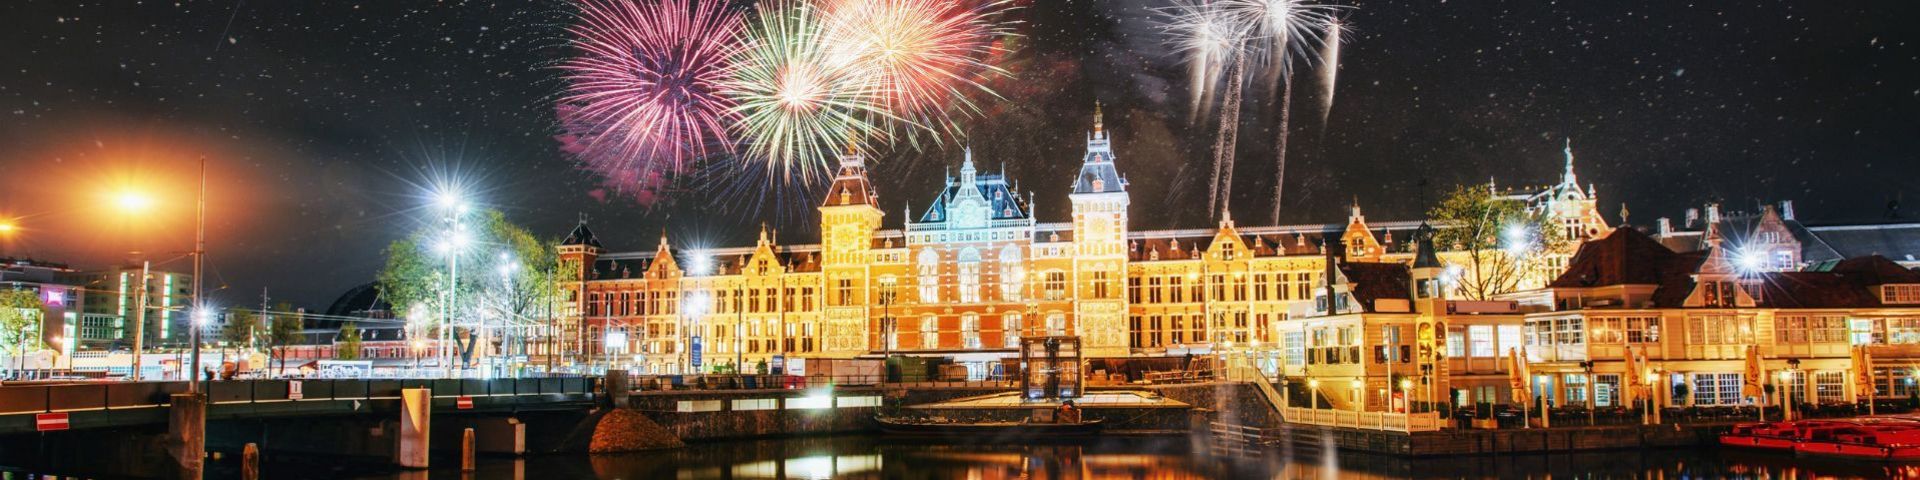 Silvesterfeuerwerk über Amsterdam bei einer Festtagsreise mit sz-Reisen